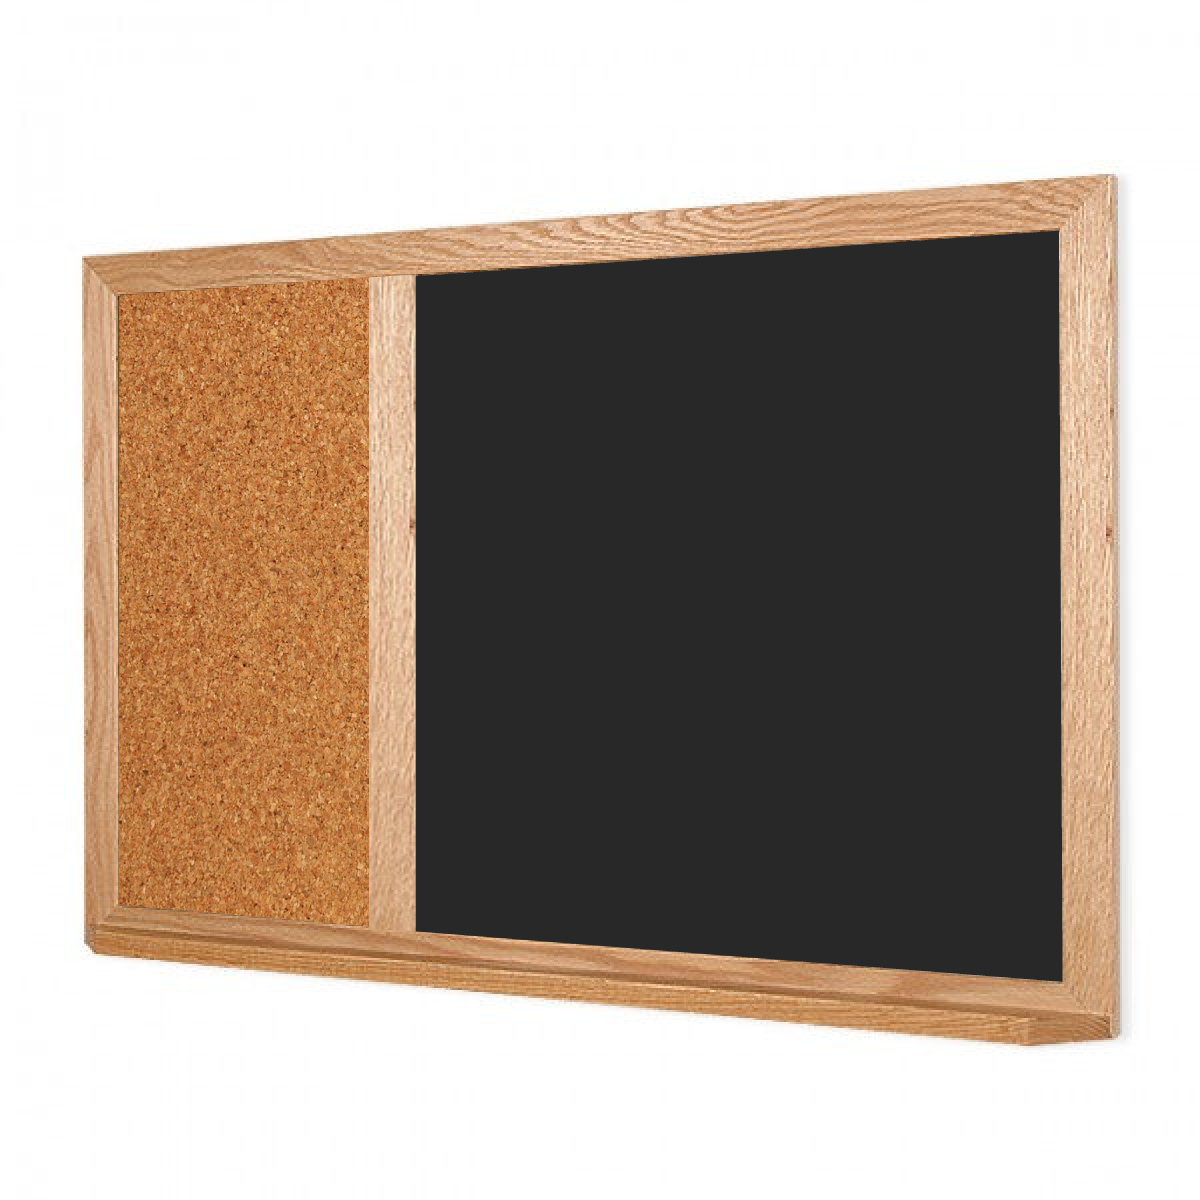 Wood Frame | Black Lam-Rite Landscape Chalkboard & Natural Cork 2/3